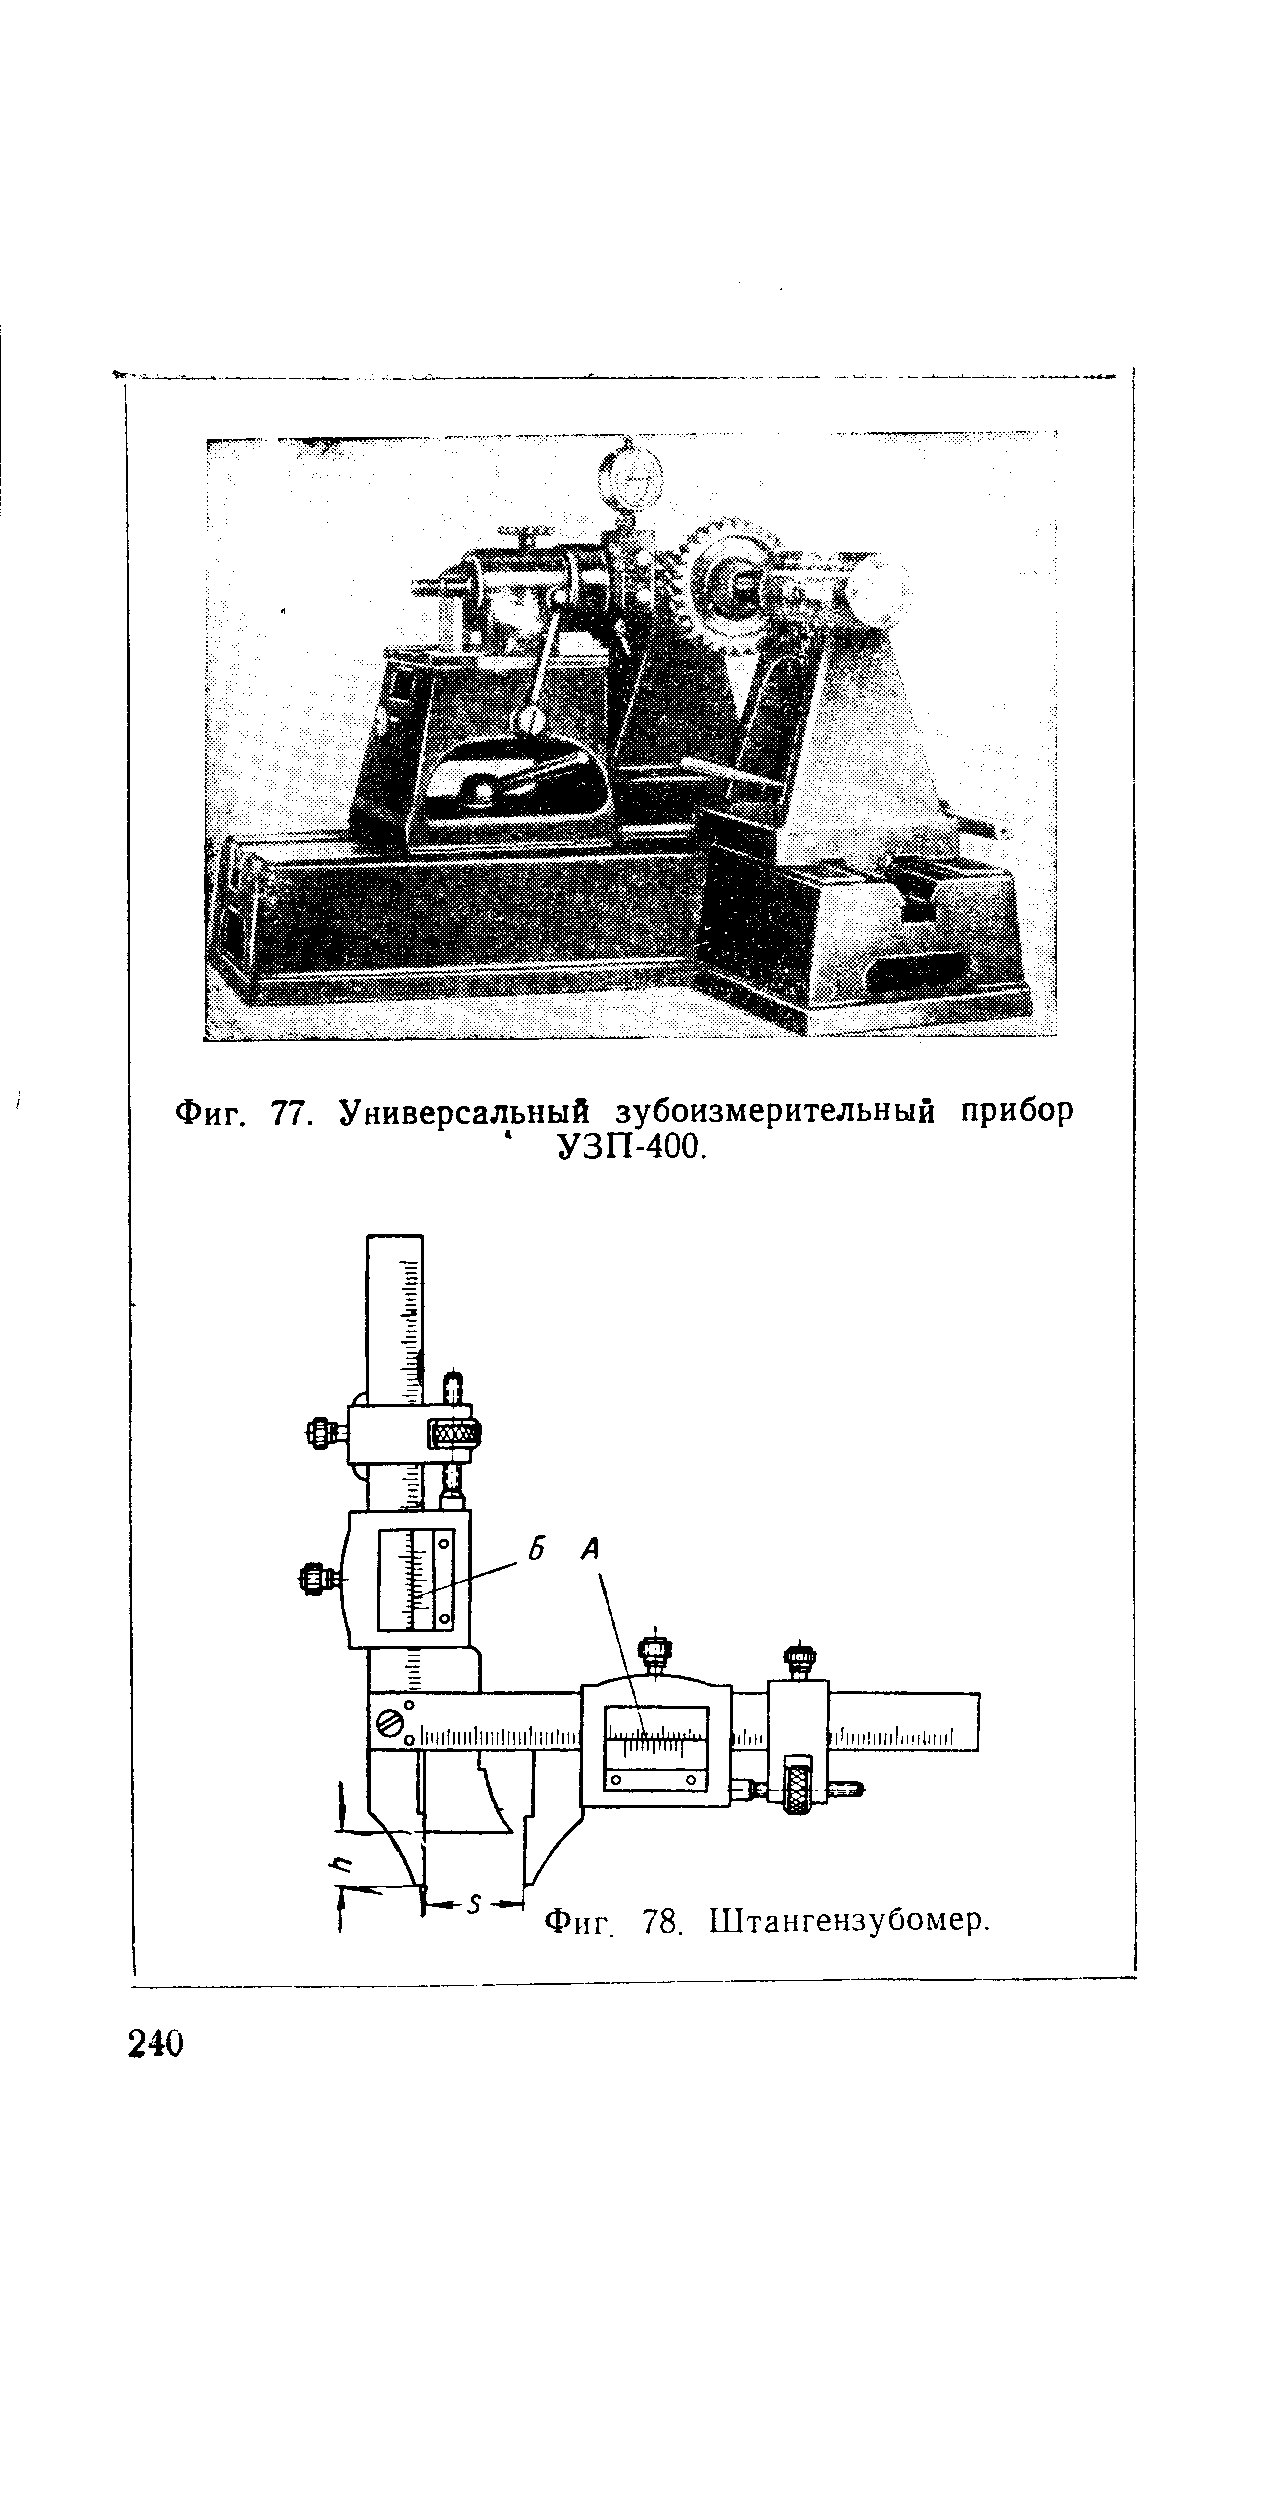 Фиг. 77. Универсальный зубоизмерительный прибор УЗП-400.
